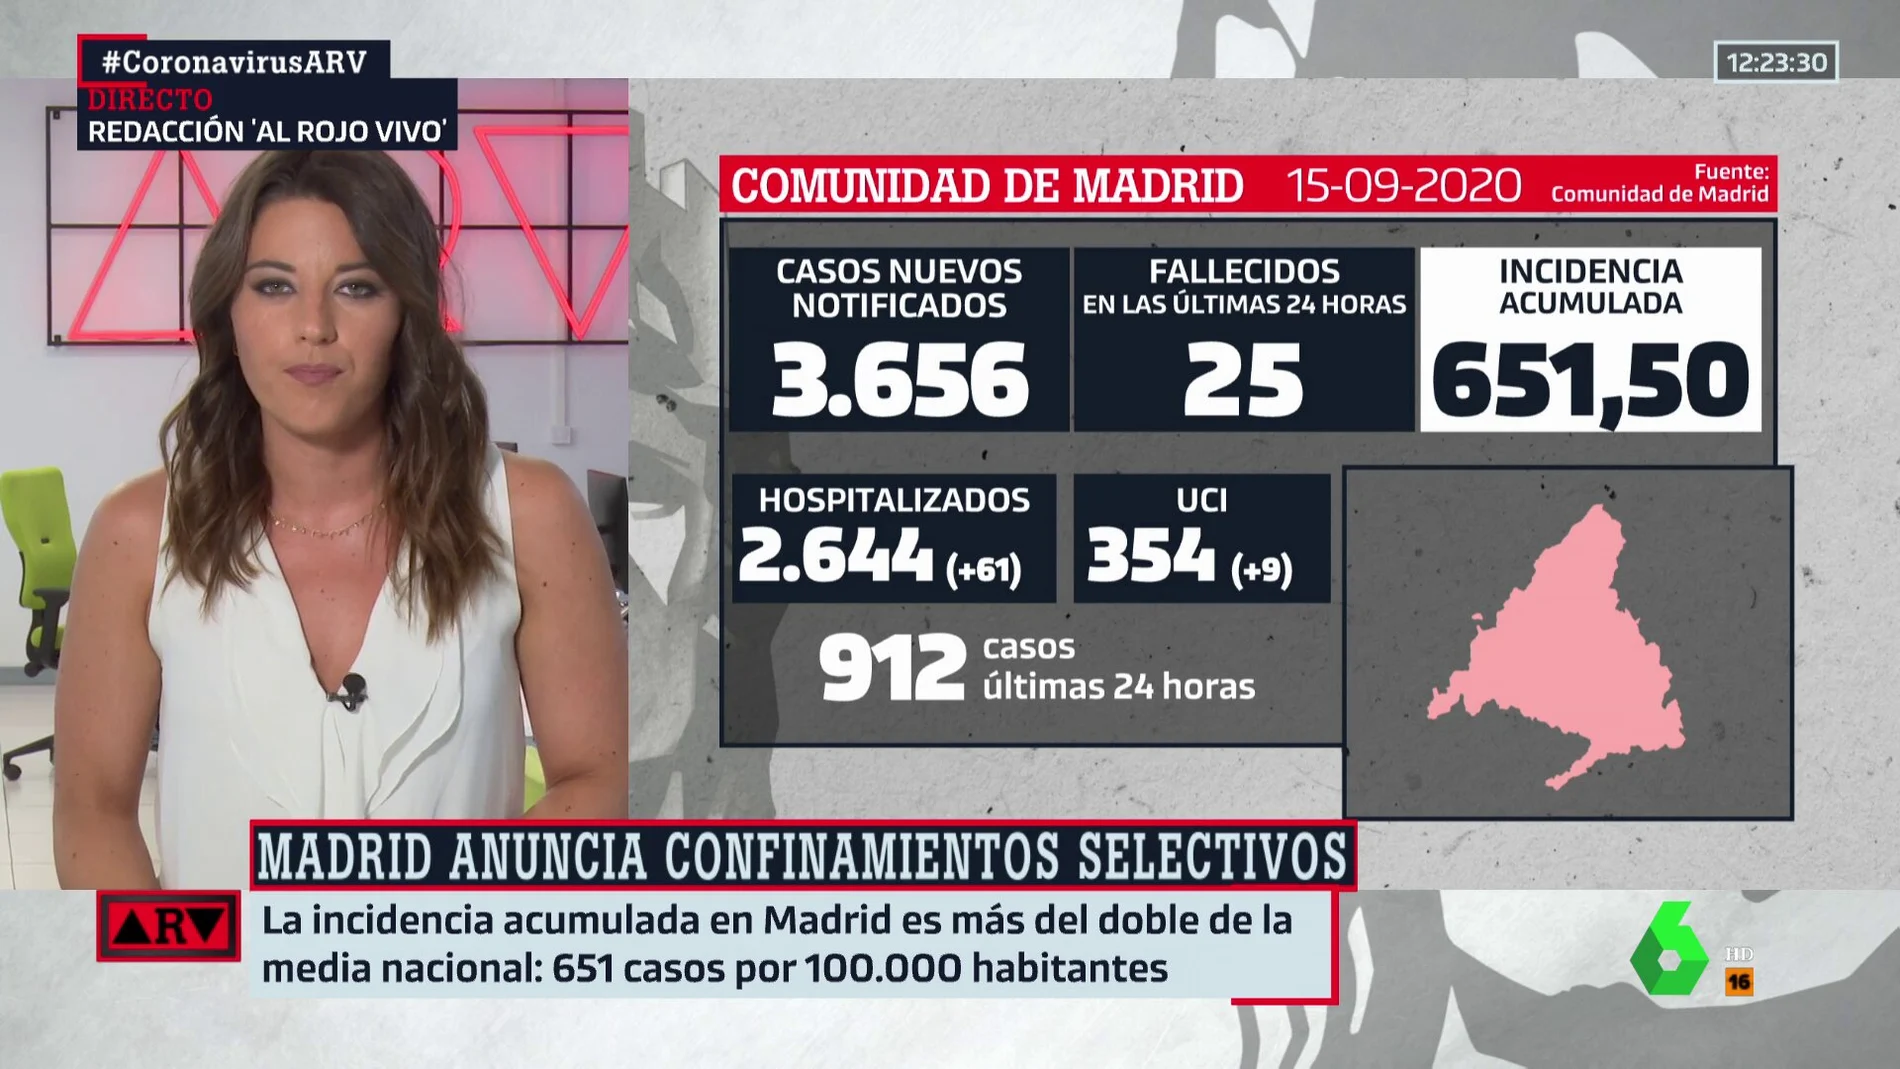 Los expertos consideran necesarias medidas urgentes en Madrid: estos son los datos del coronavirus en la capital